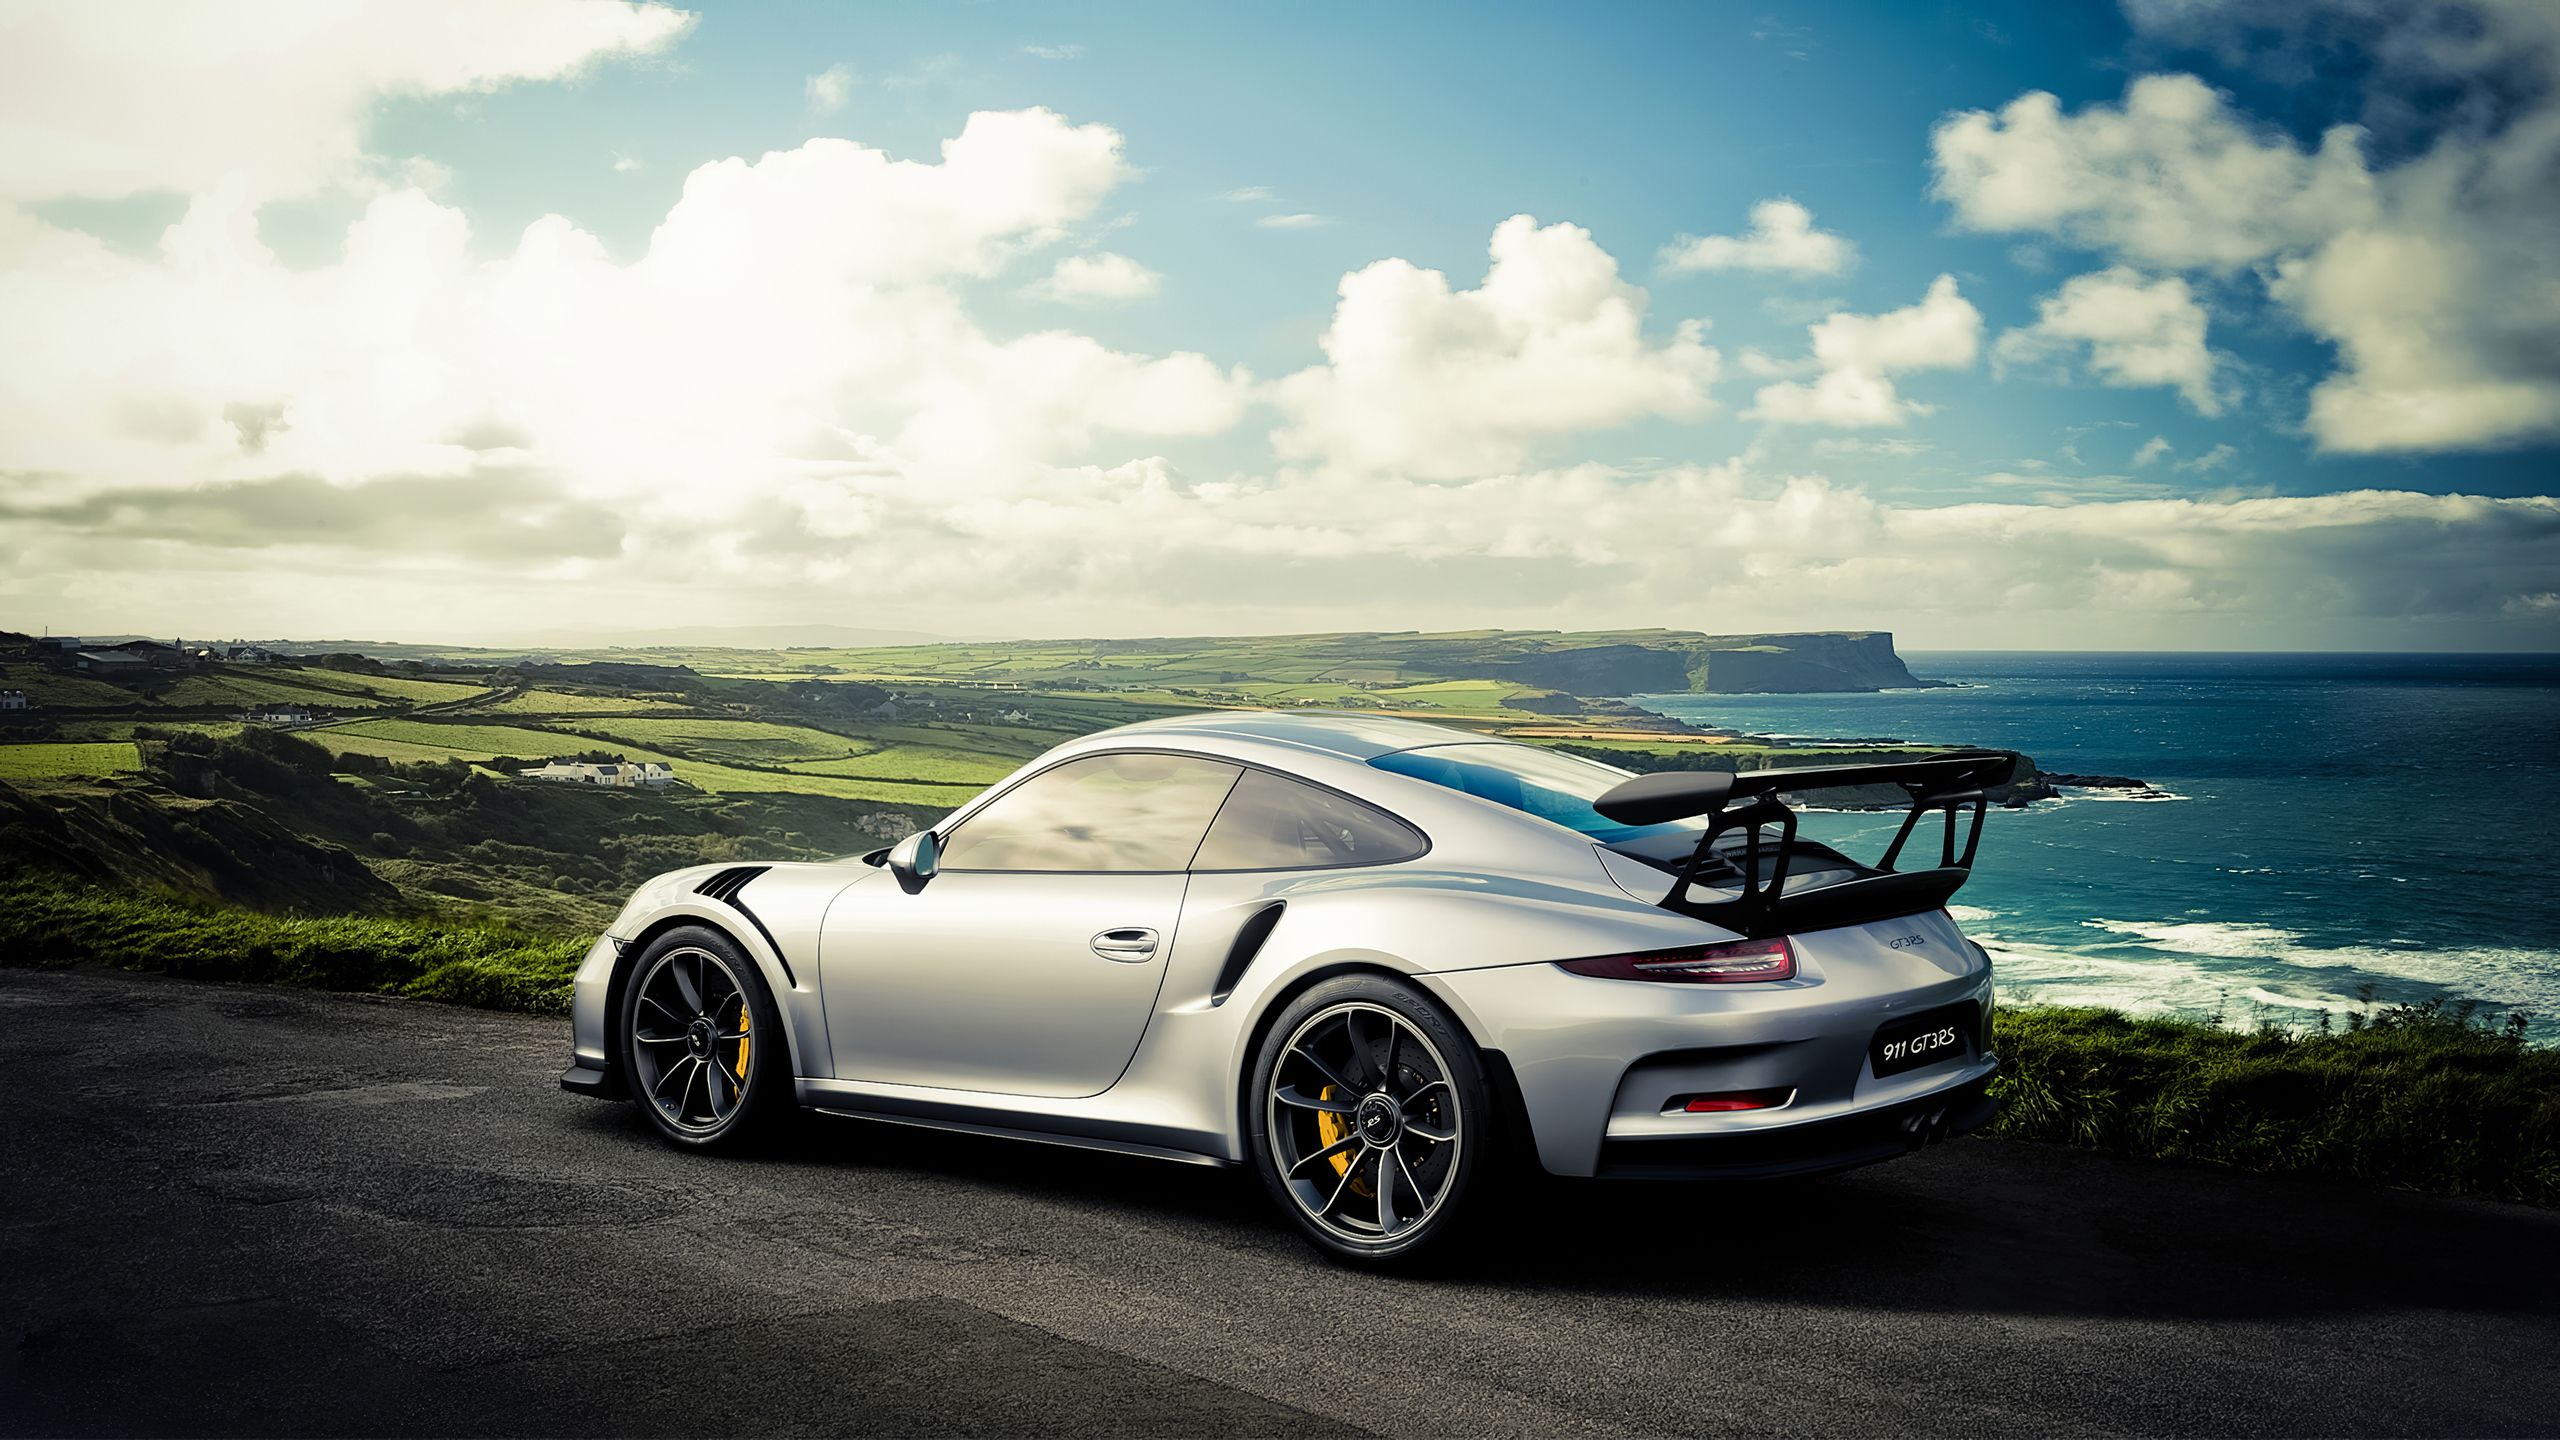 2560x1440 Porsche 911 Gt3 Rs 2019 4k 1440P Resolution HD 4k.